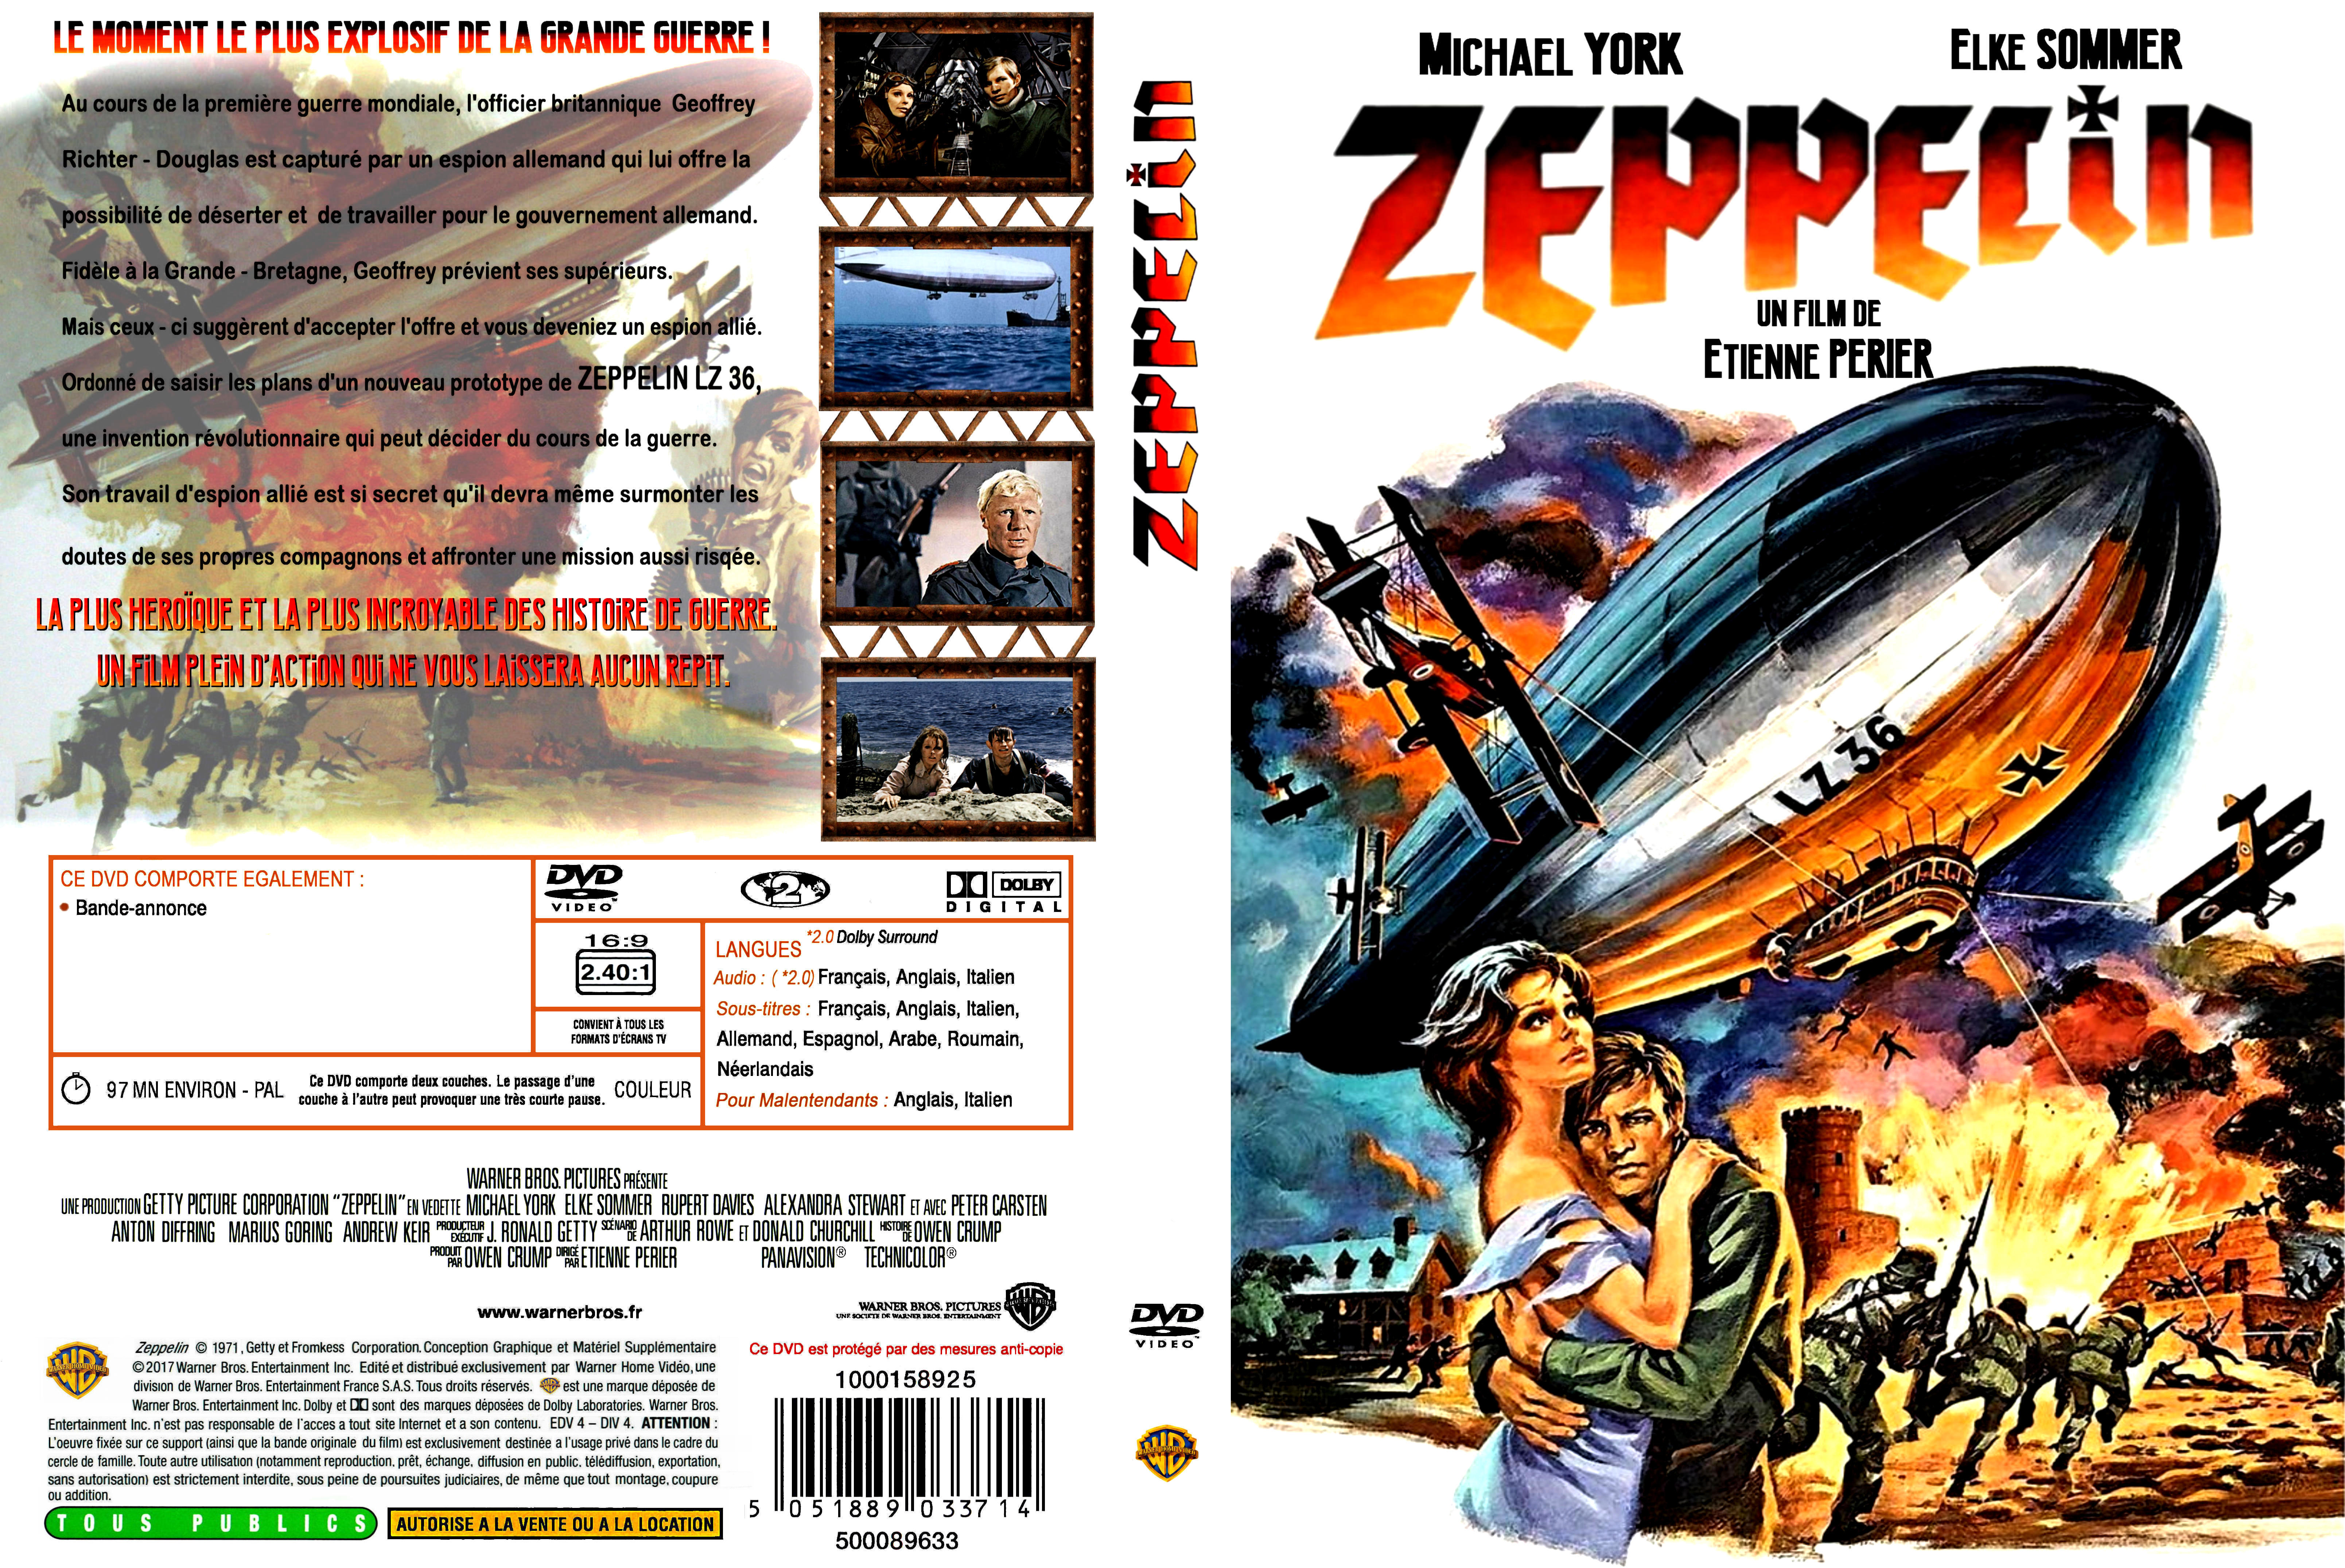 Jaquette DVD Zeppelin custom